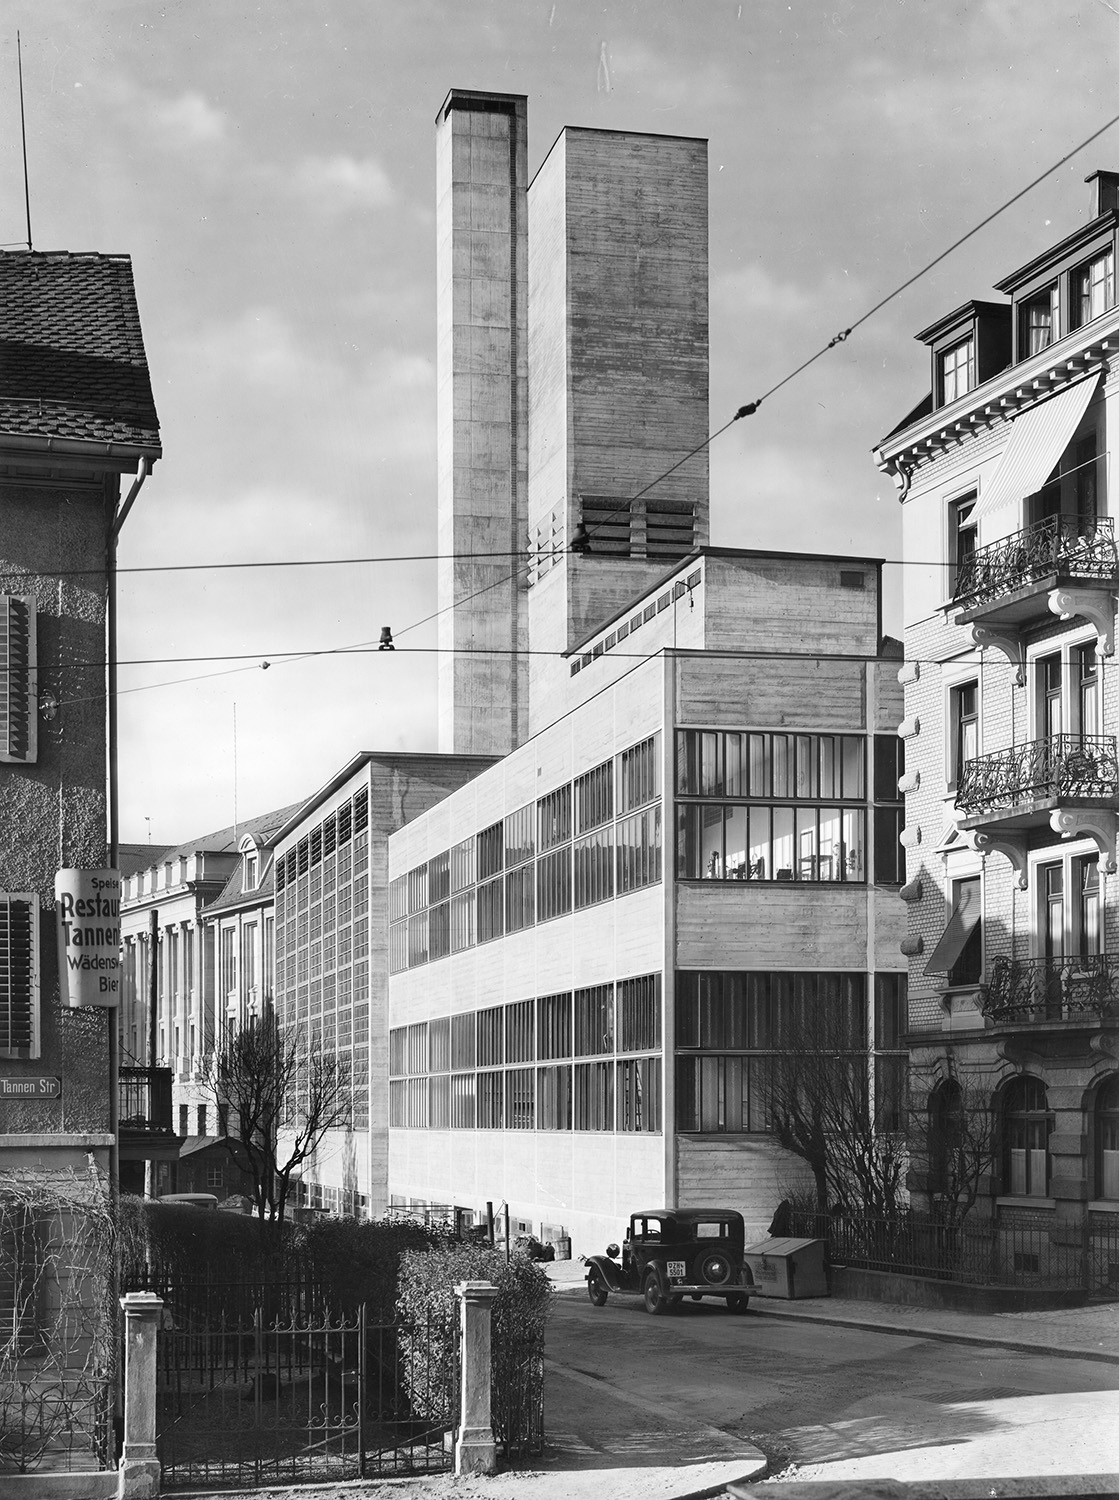 Enlarged view: Altes schwarz weiss Bild, Gebäude von aussen.